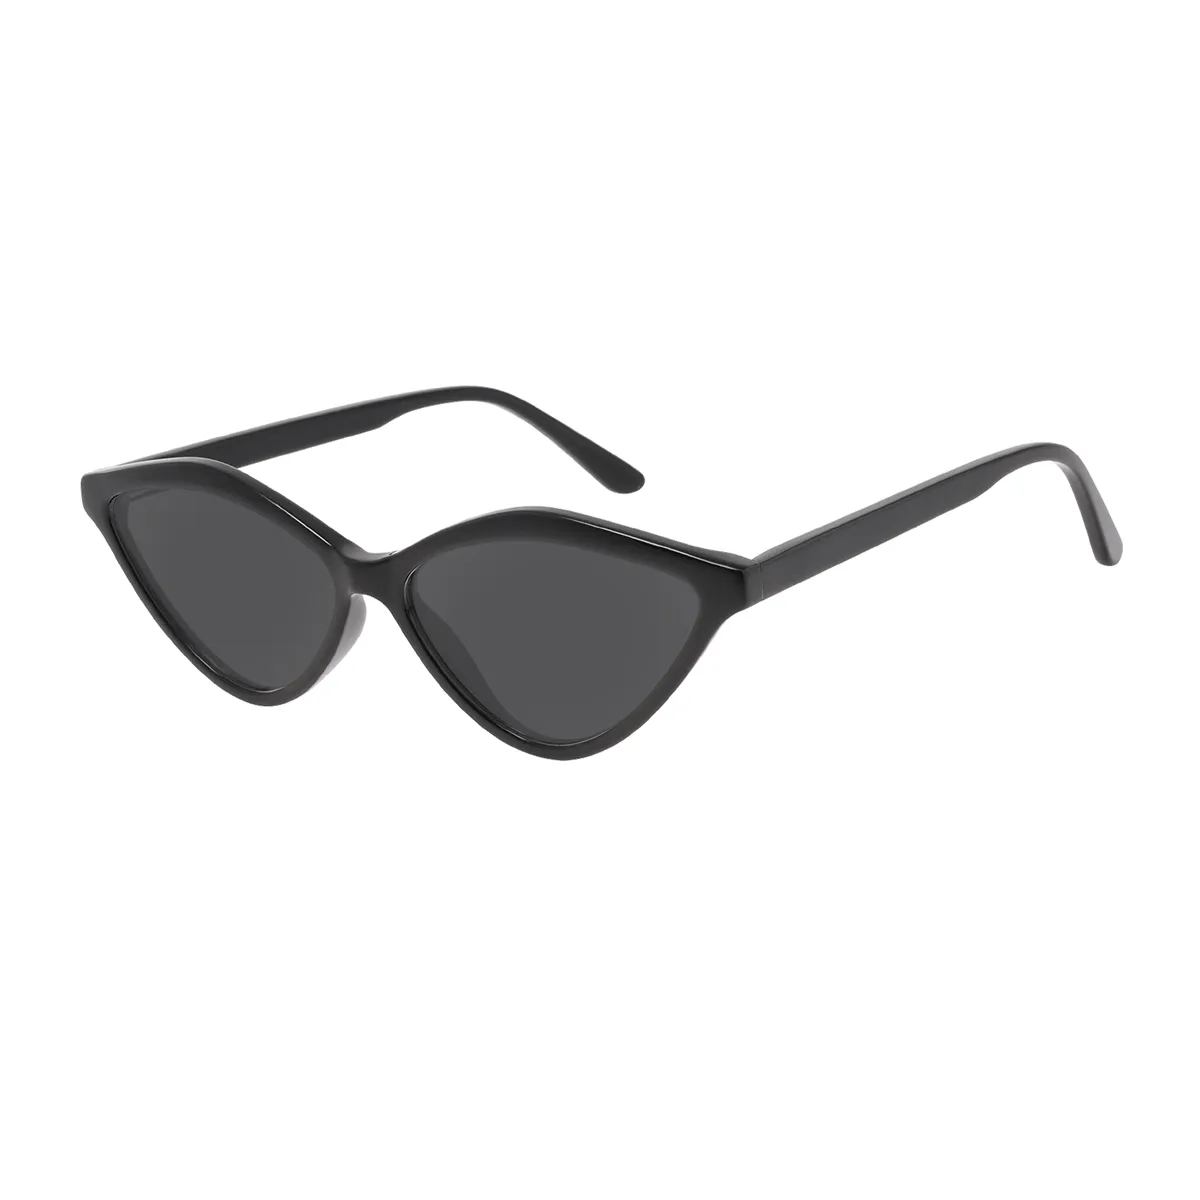 Aline - Cat-eye Black Sunglasses for Women